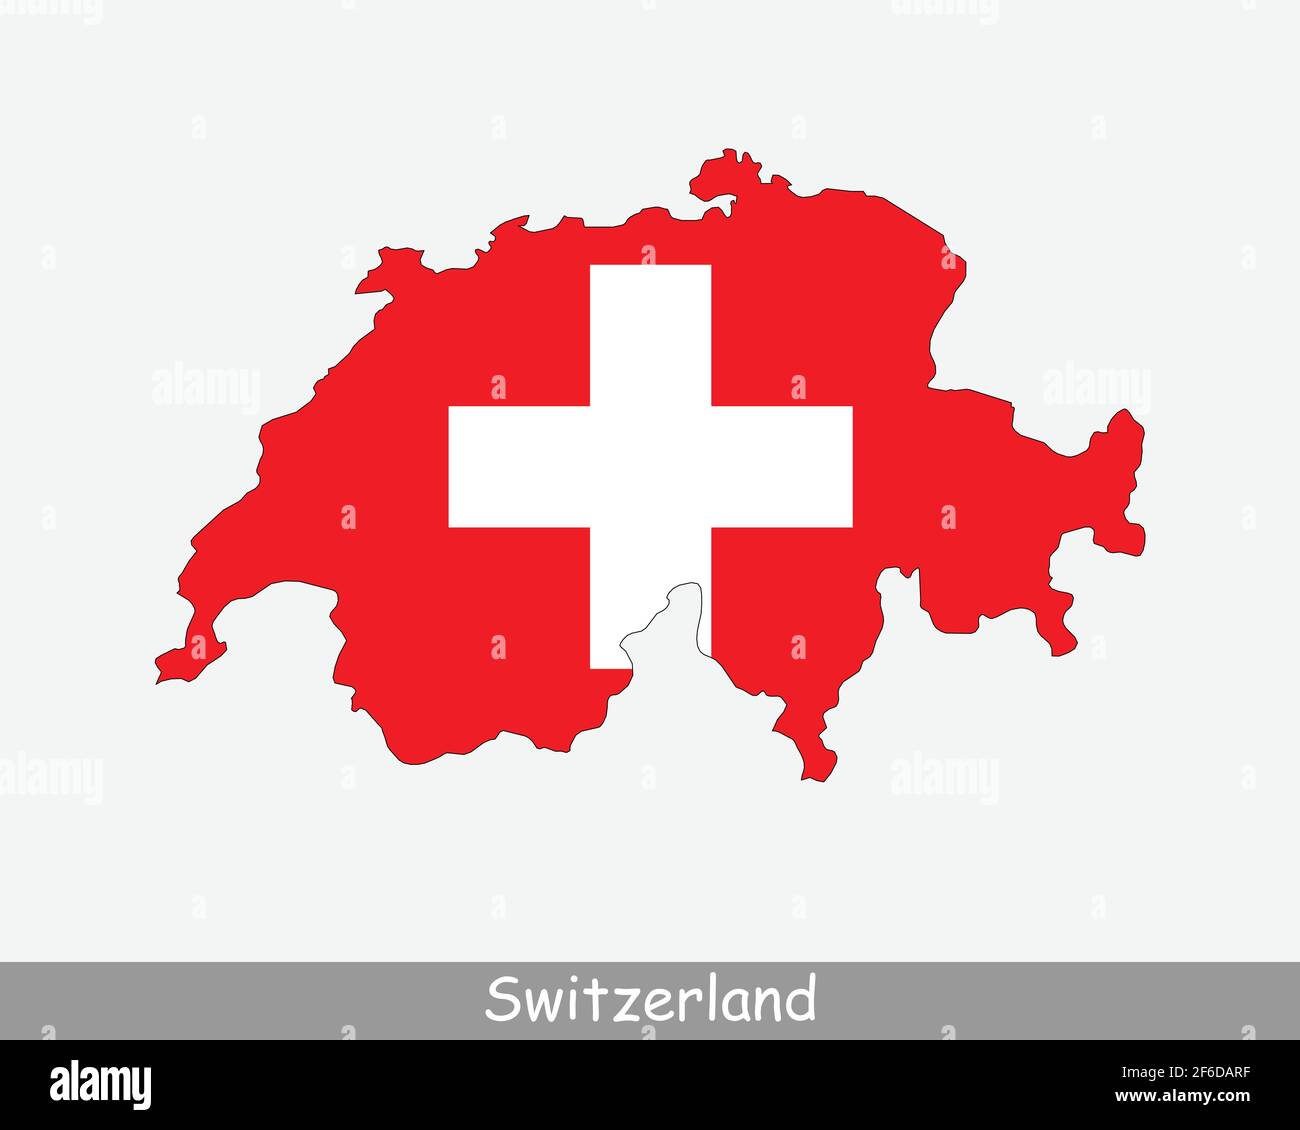 Mappa della bandiera della Svizzera. Carta della Confederazione svizzera con bandiera nazionale svizzera isolata su sfondo bianco. Illustrazione vettoriale. Illustrazione Vettoriale